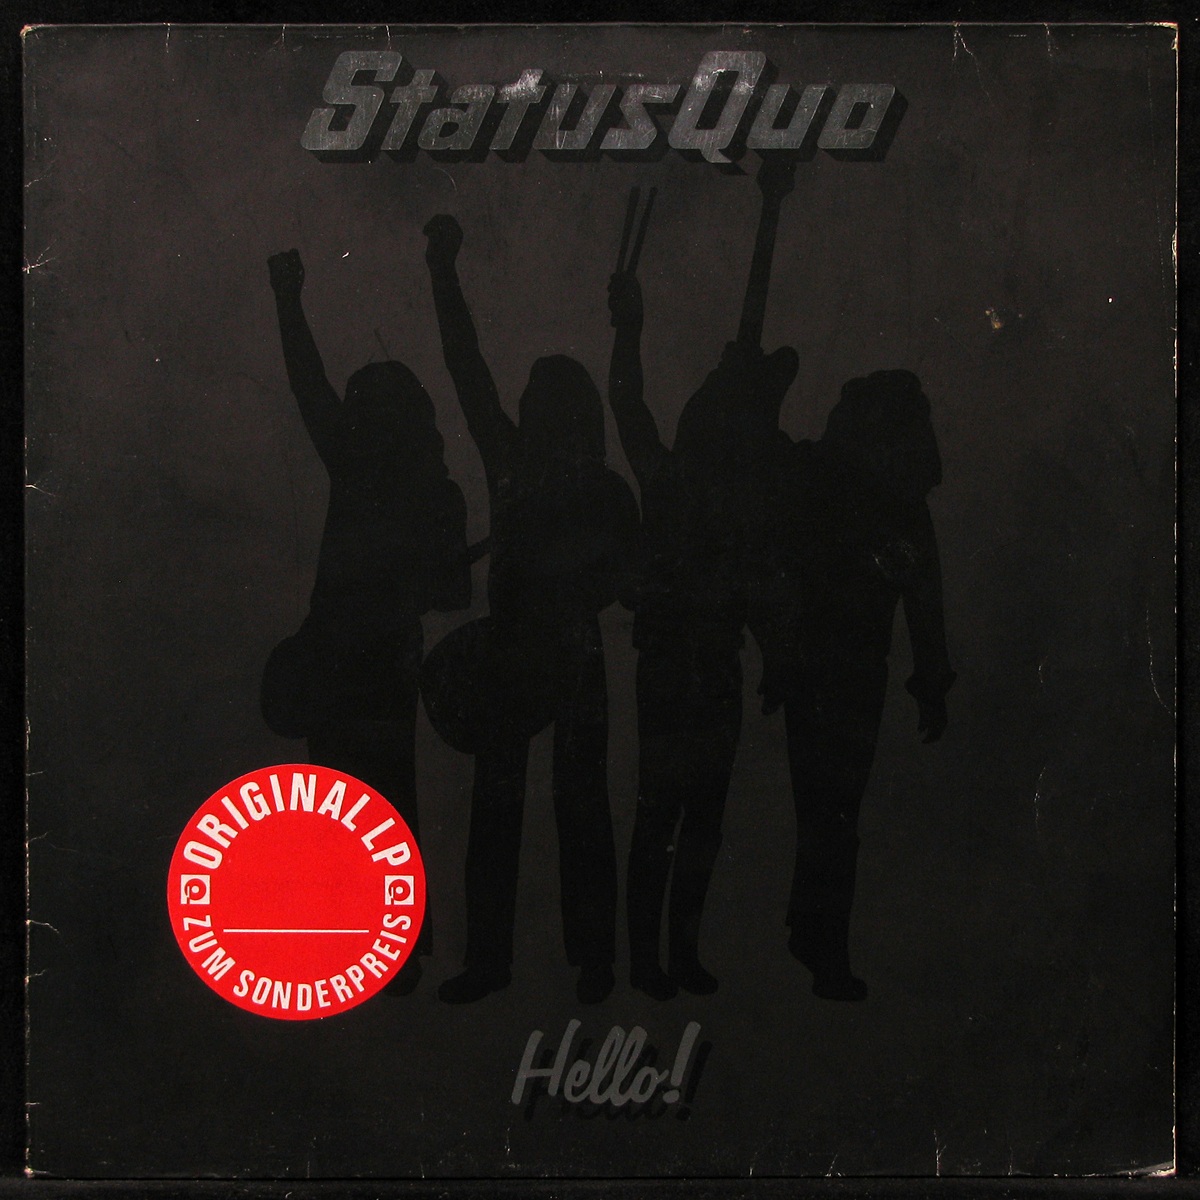 LP Status Quo — Hello! фото